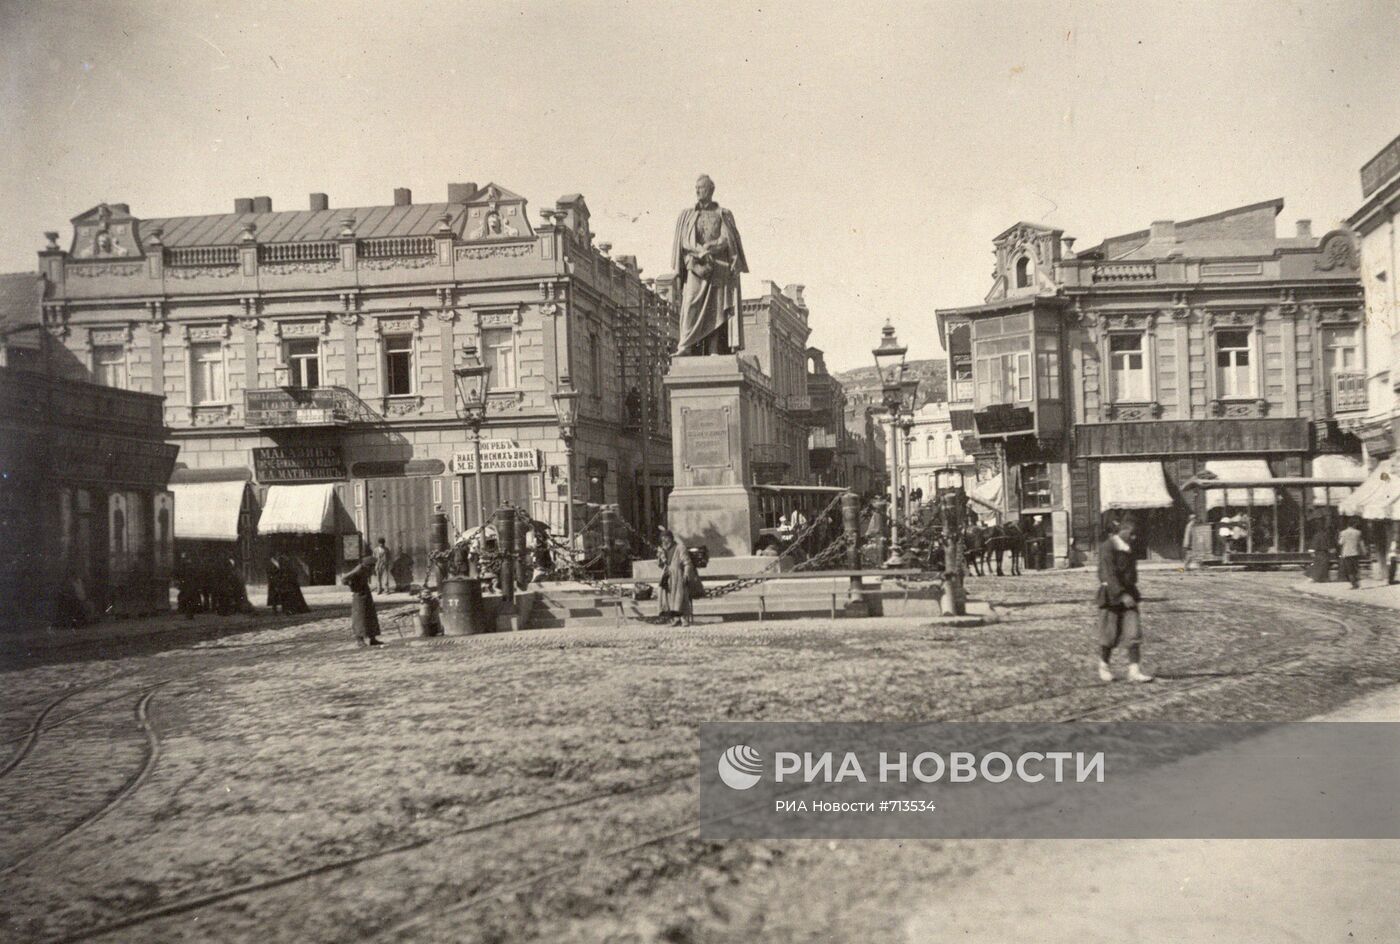 Памятник князю, царскому наместнику в Тбилиси Михаилу Воронцову